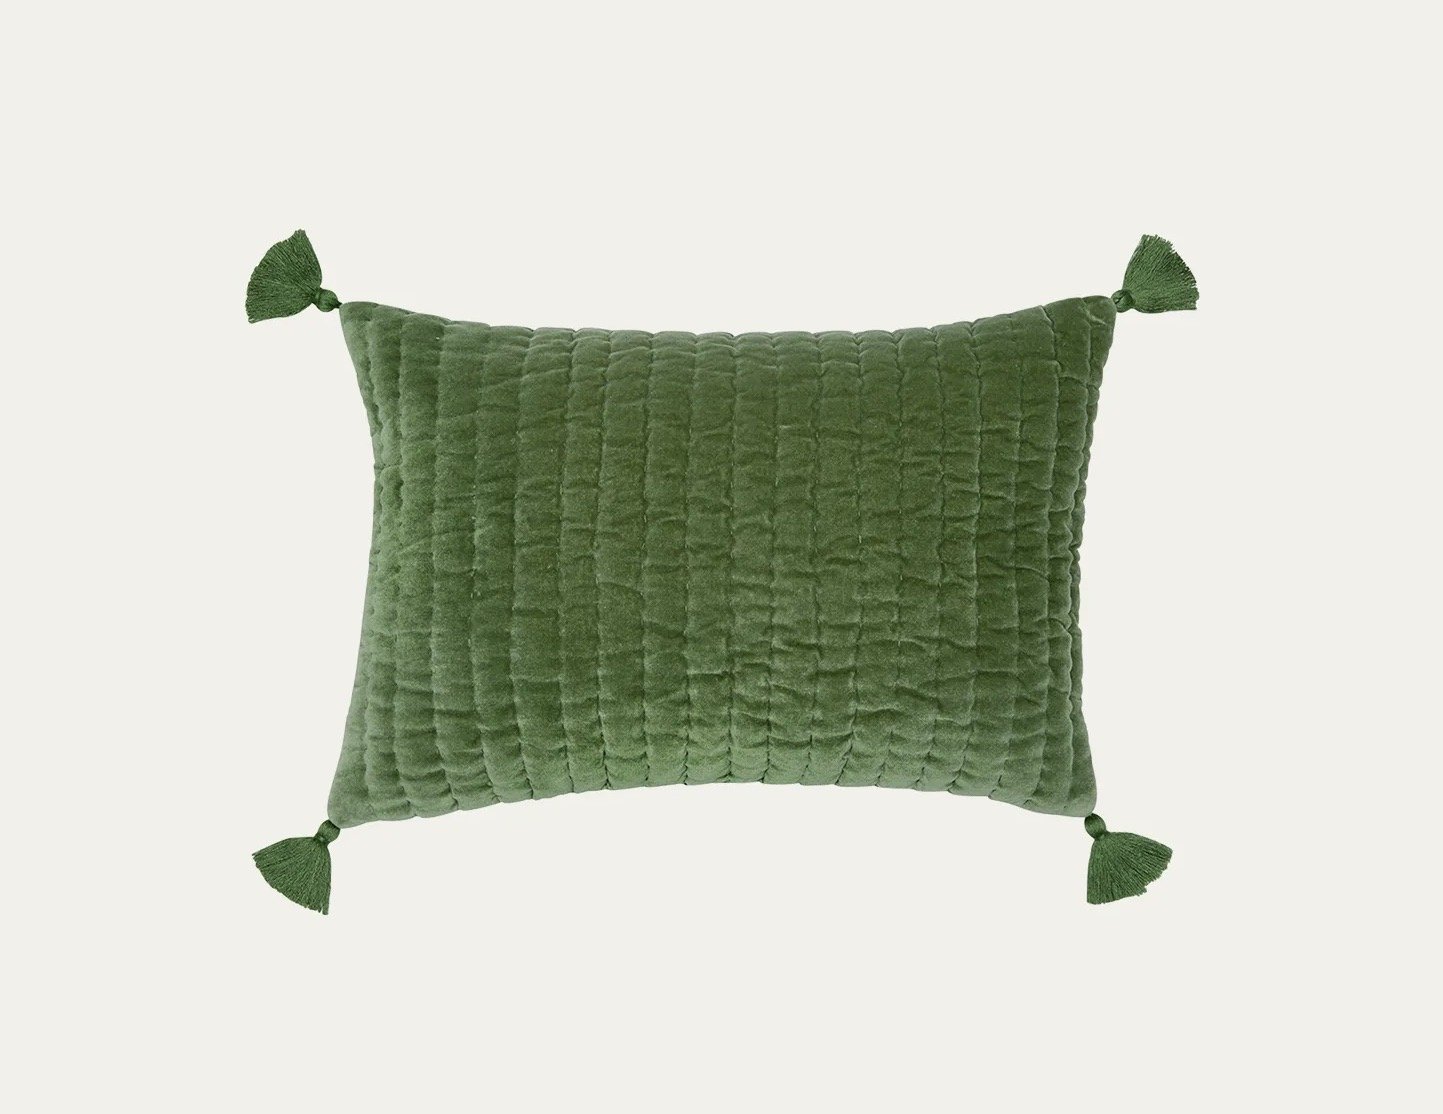 42899 - 12X18 Velvet Pillow in Moss - $135- Purchased